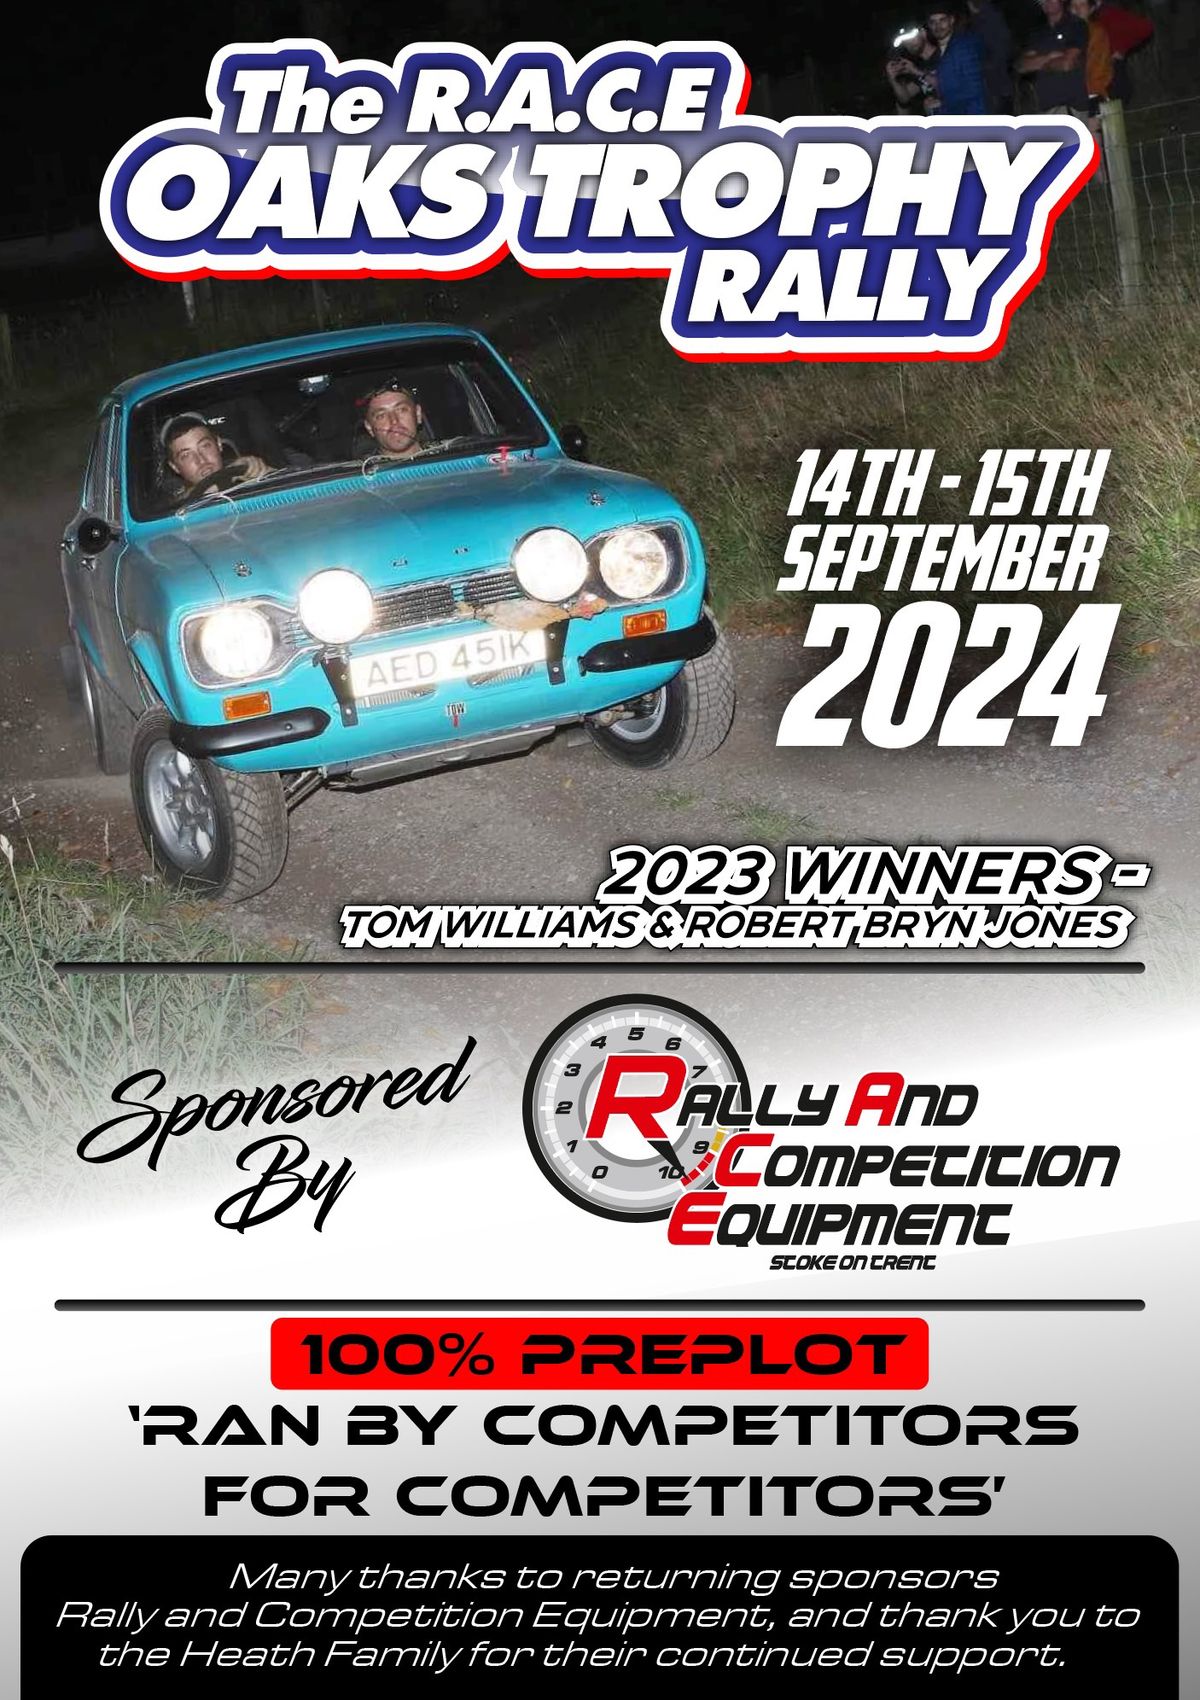 The R.A.C.E Oaks Trophy Rally 